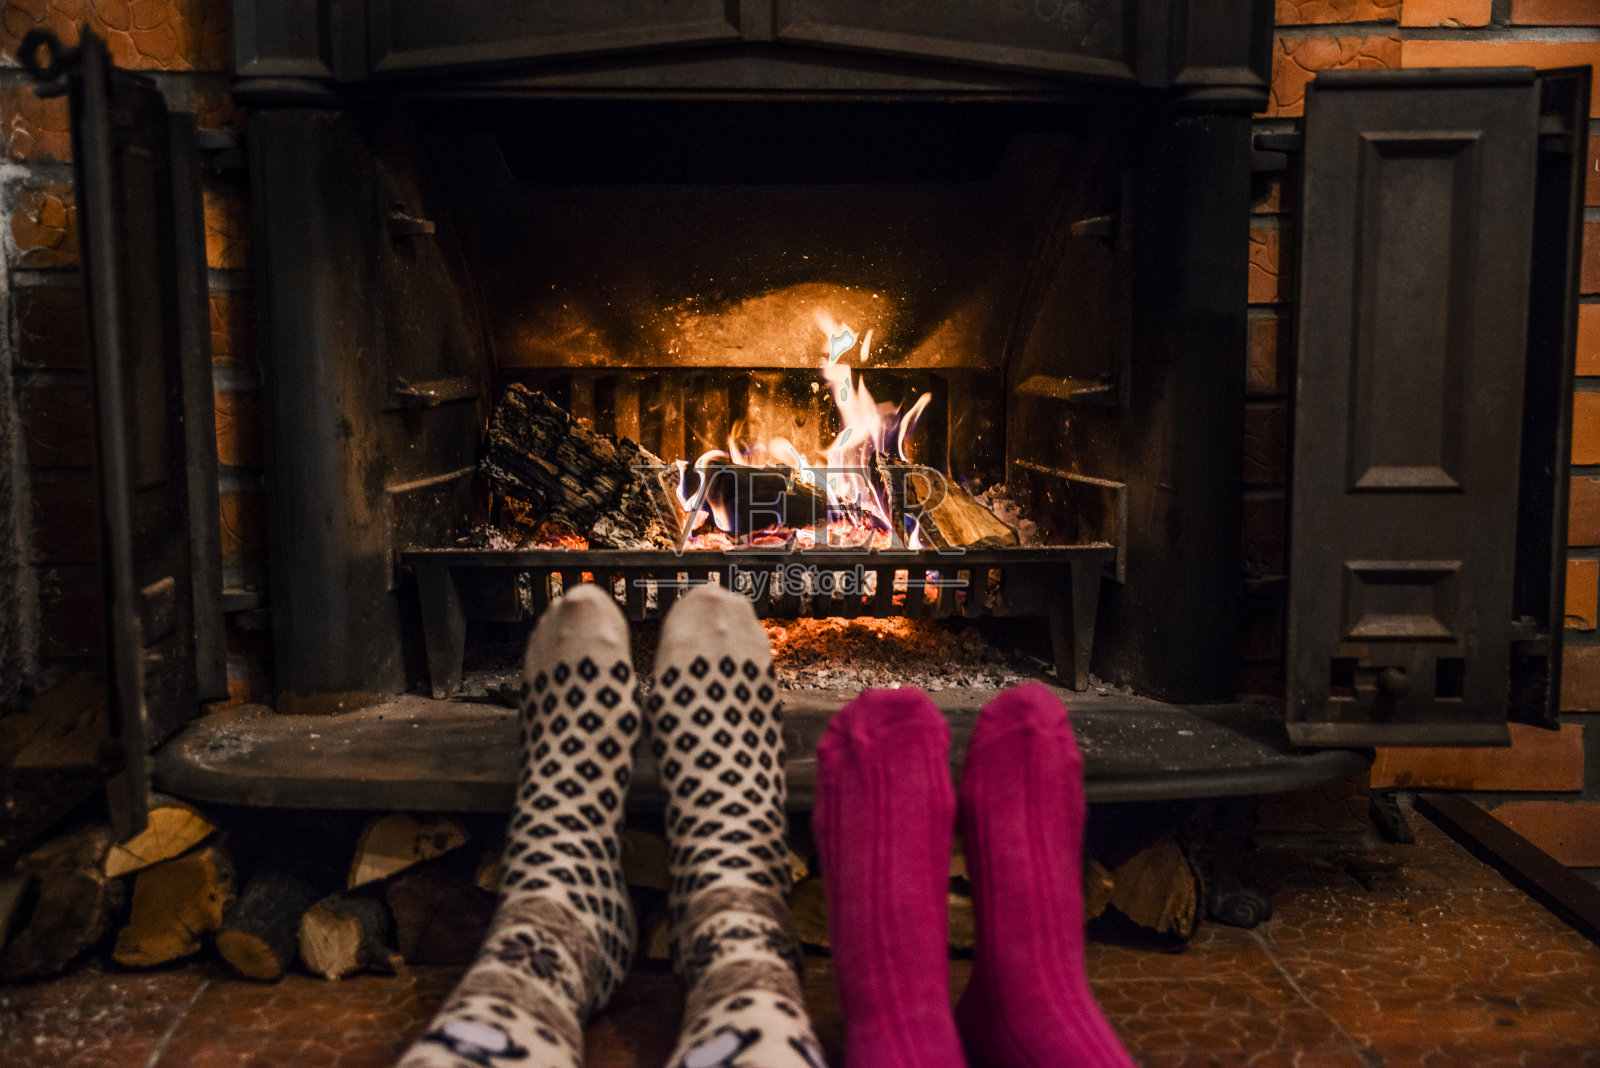 脚上穿着羊毛袜子，在温暖的炉火旁取暖照片摄影图片